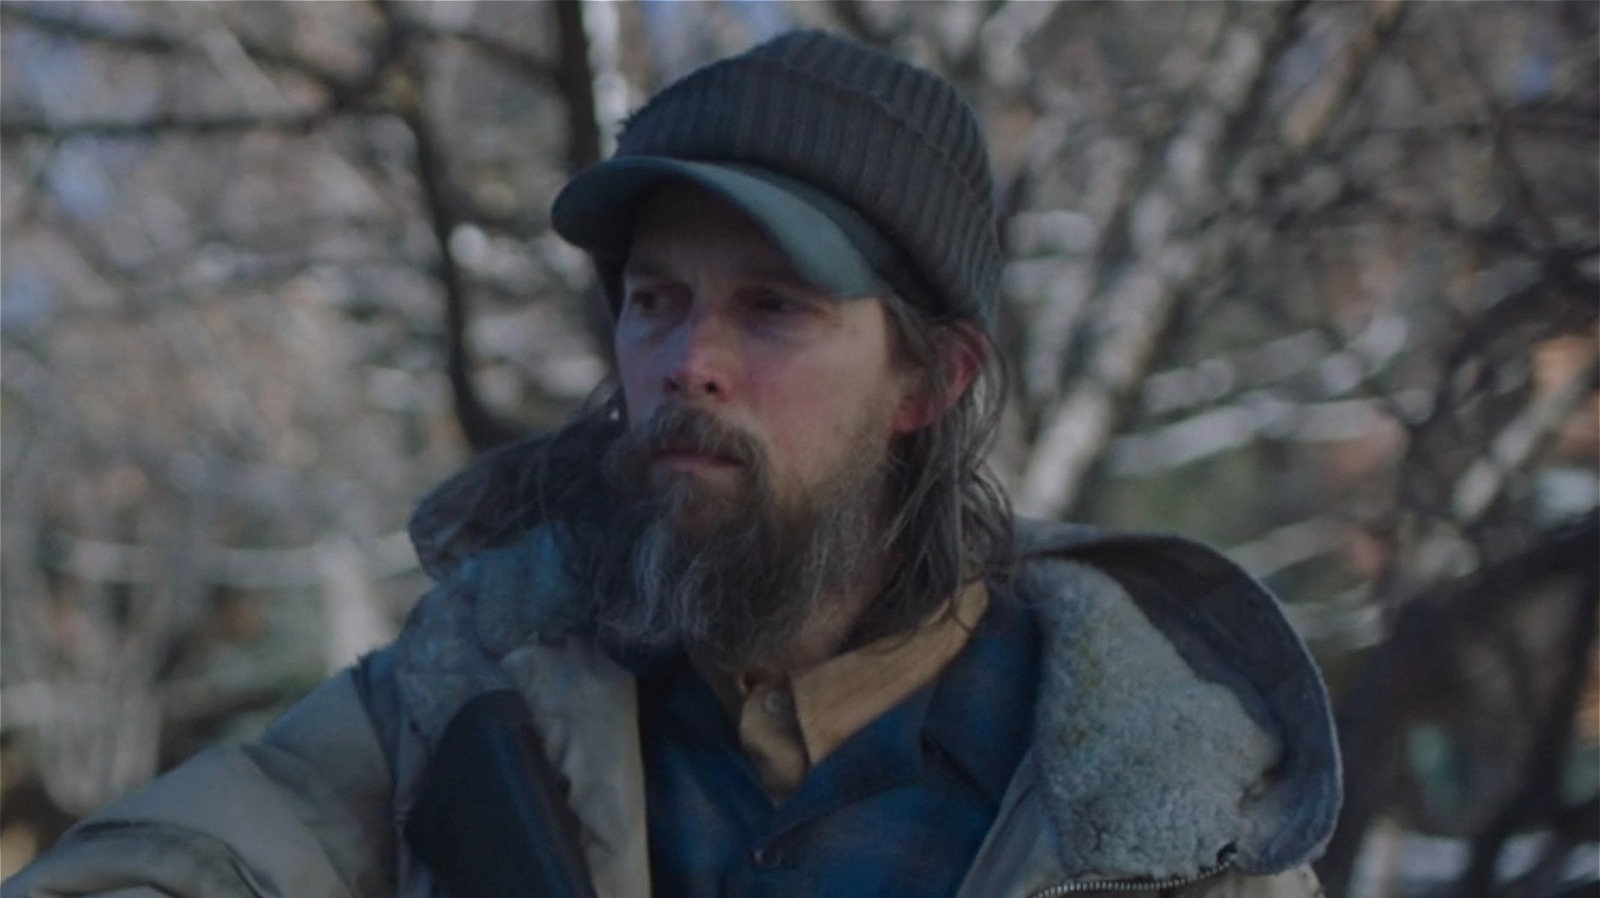 Nelson Leis vai interpretar Josiah em The Last of Us, mas fã encontra  indício que ele pode ser David